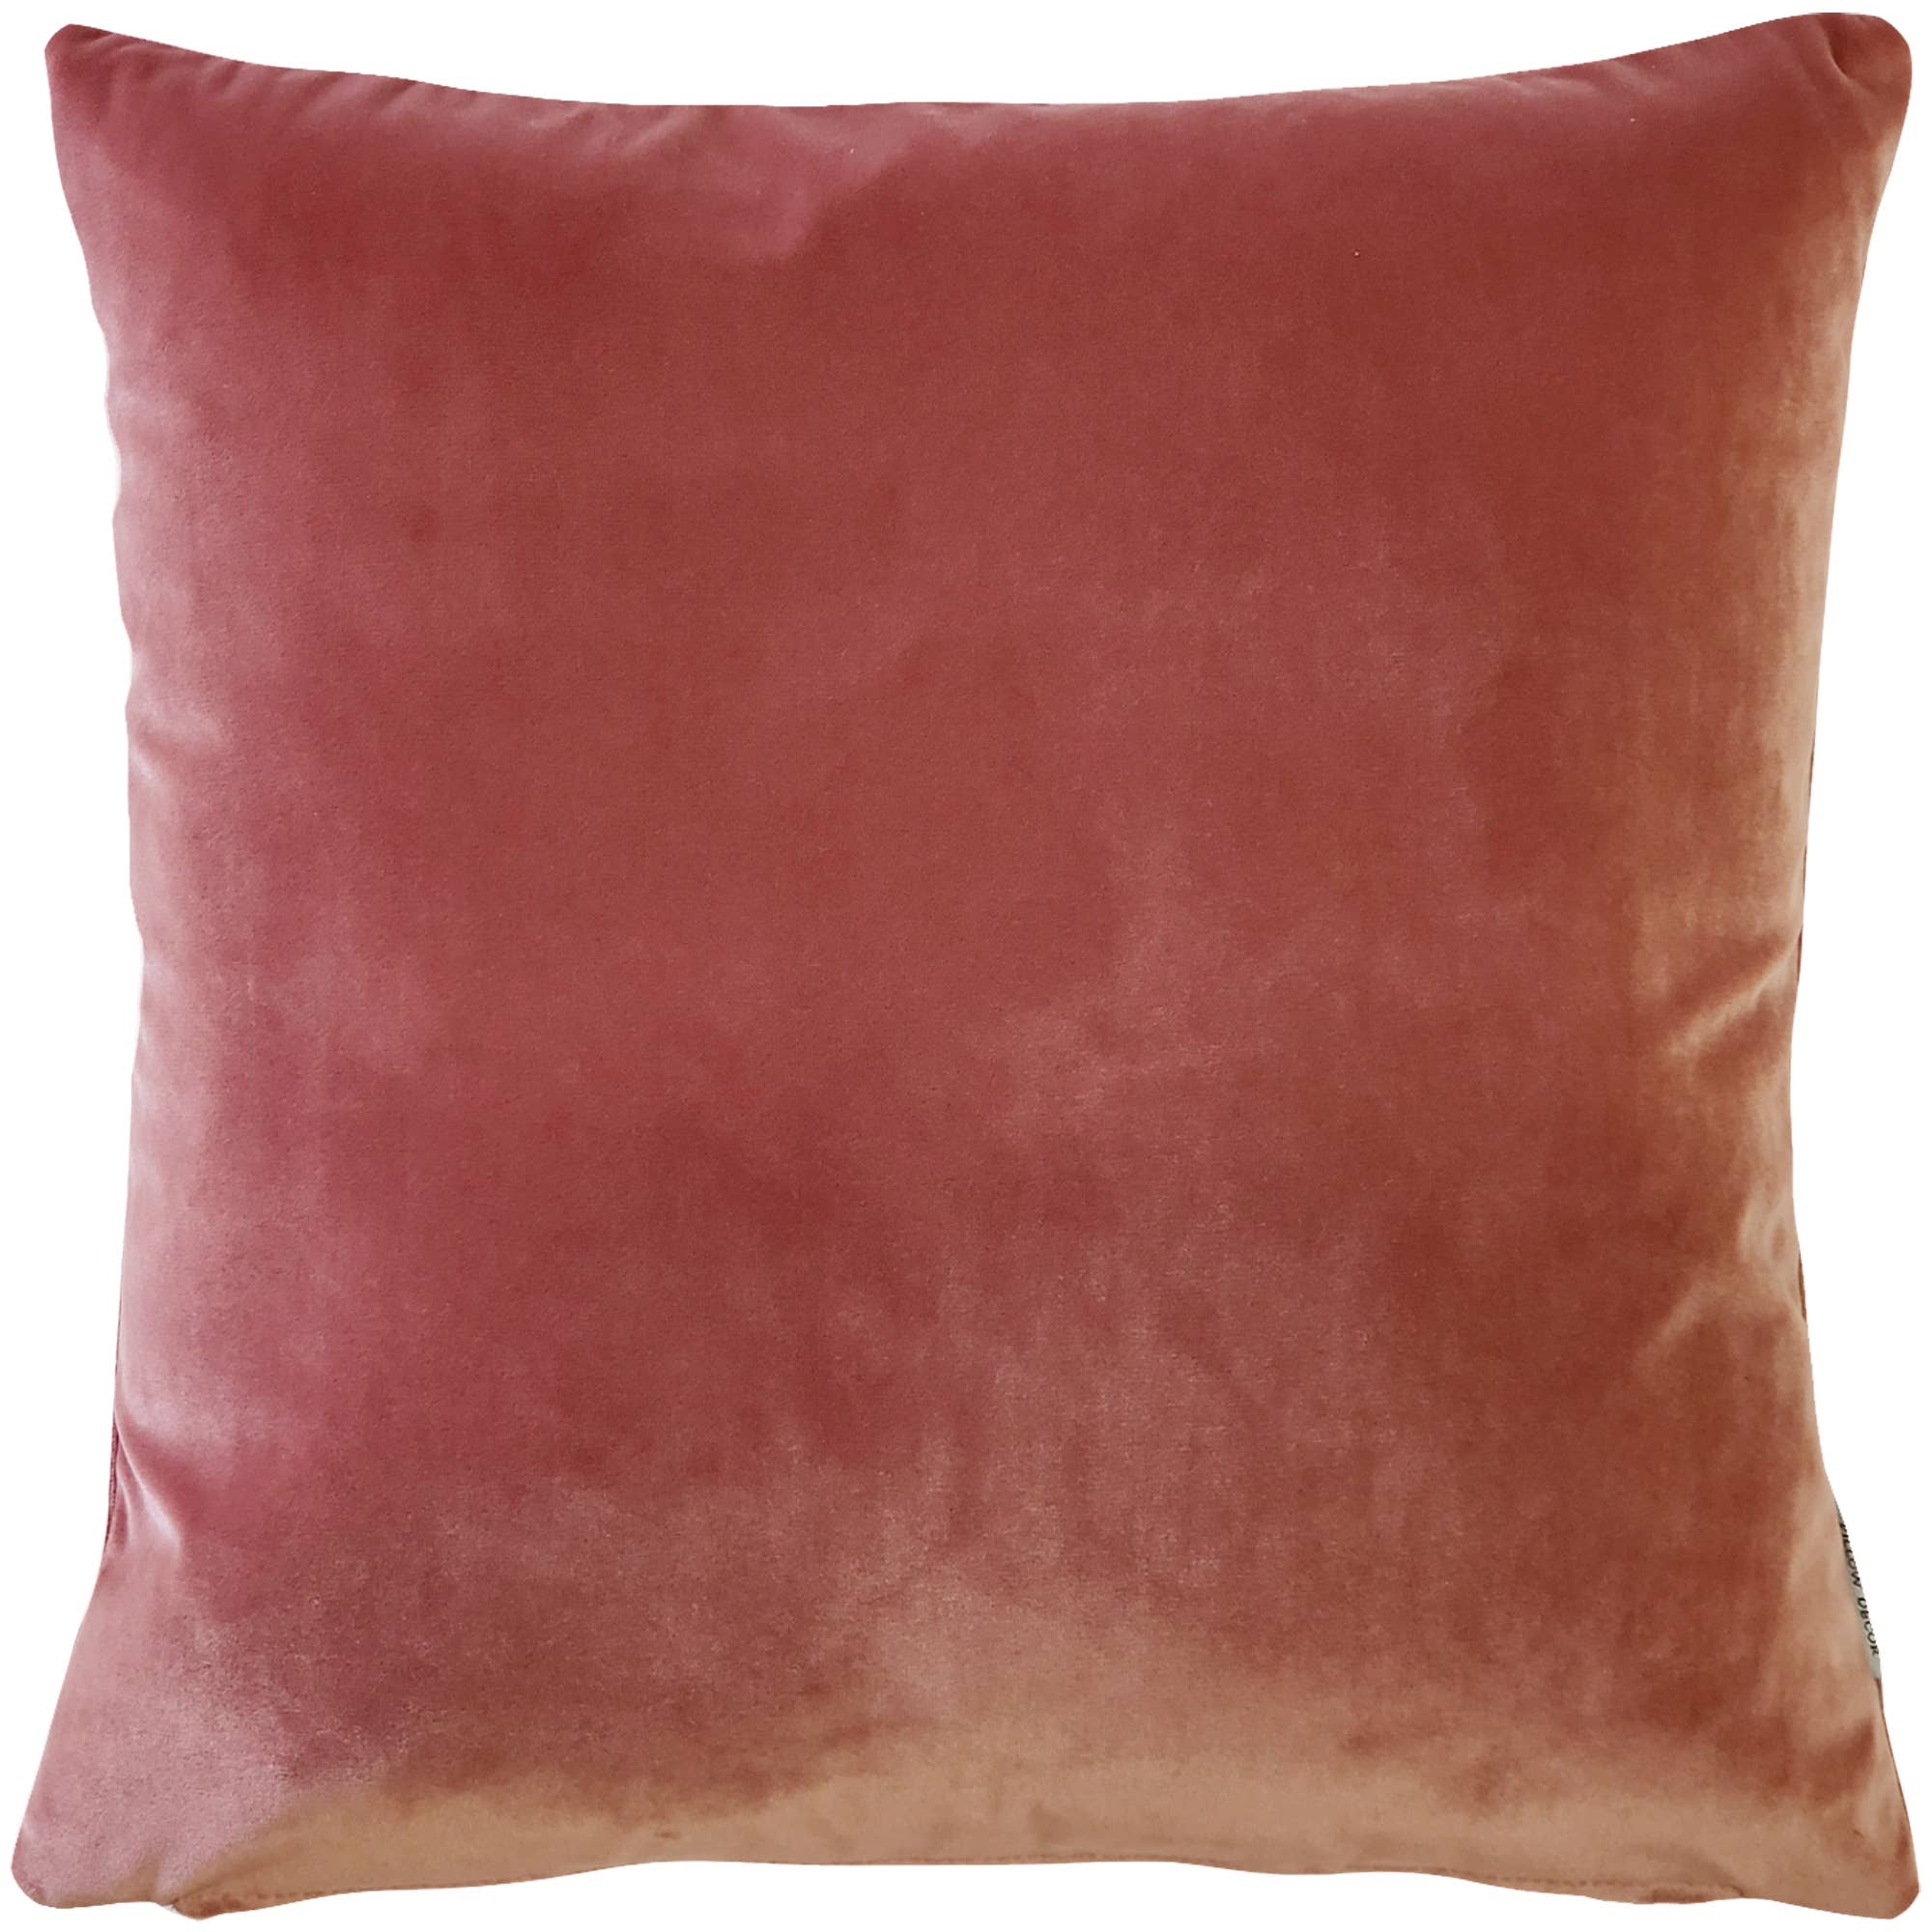 Castello Rose Blush Velvet Throw Pillow, 17"x17" Square